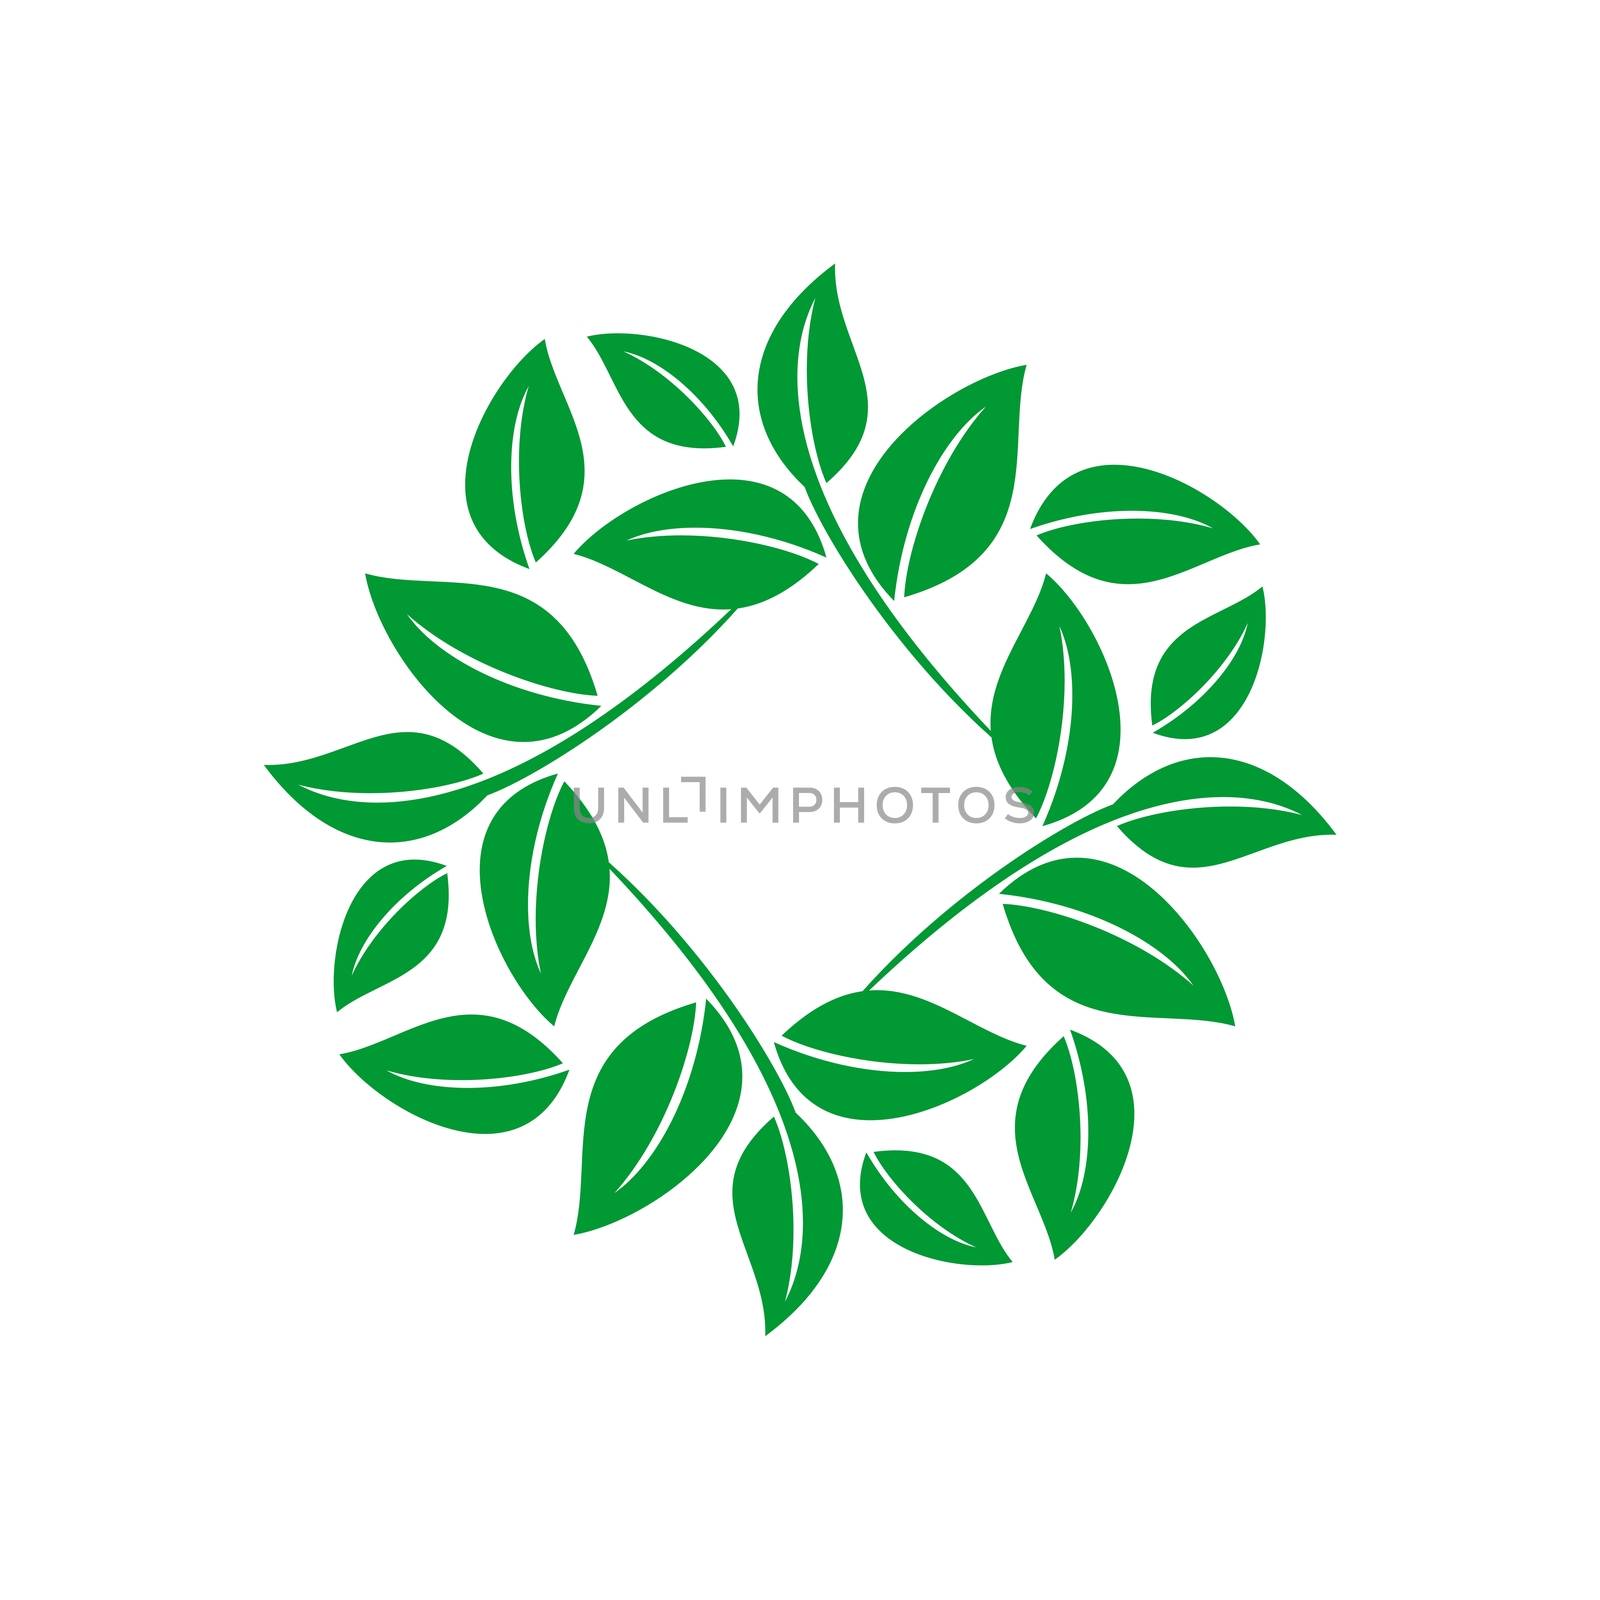 Flower Green Leaves Logo Template Illustration Design. Vector EPS 10.